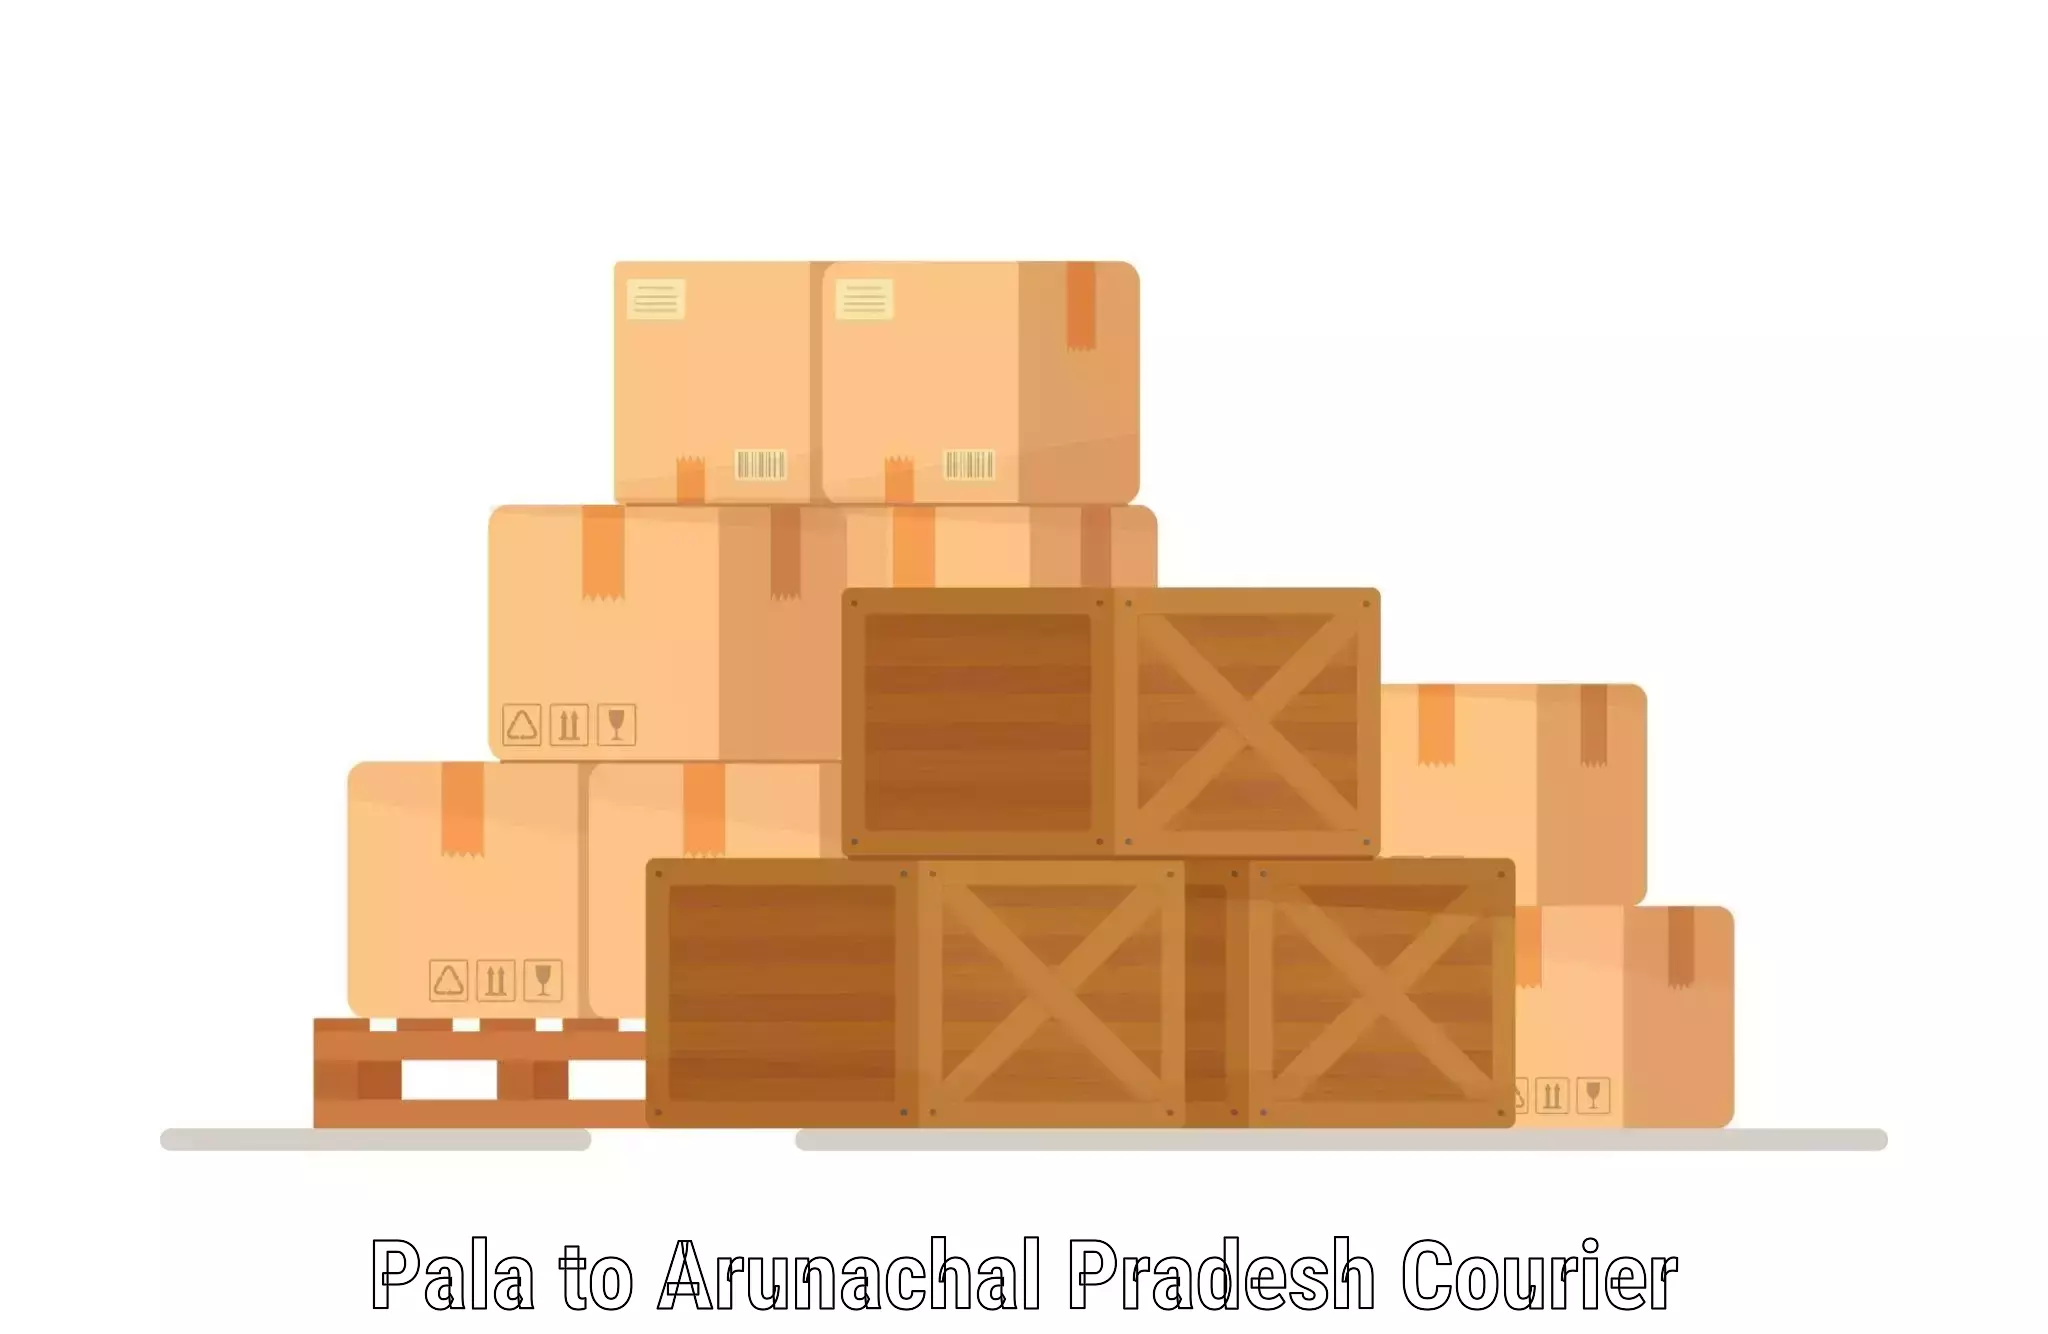 Customer-oriented courier services Pala to Arunachal Pradesh